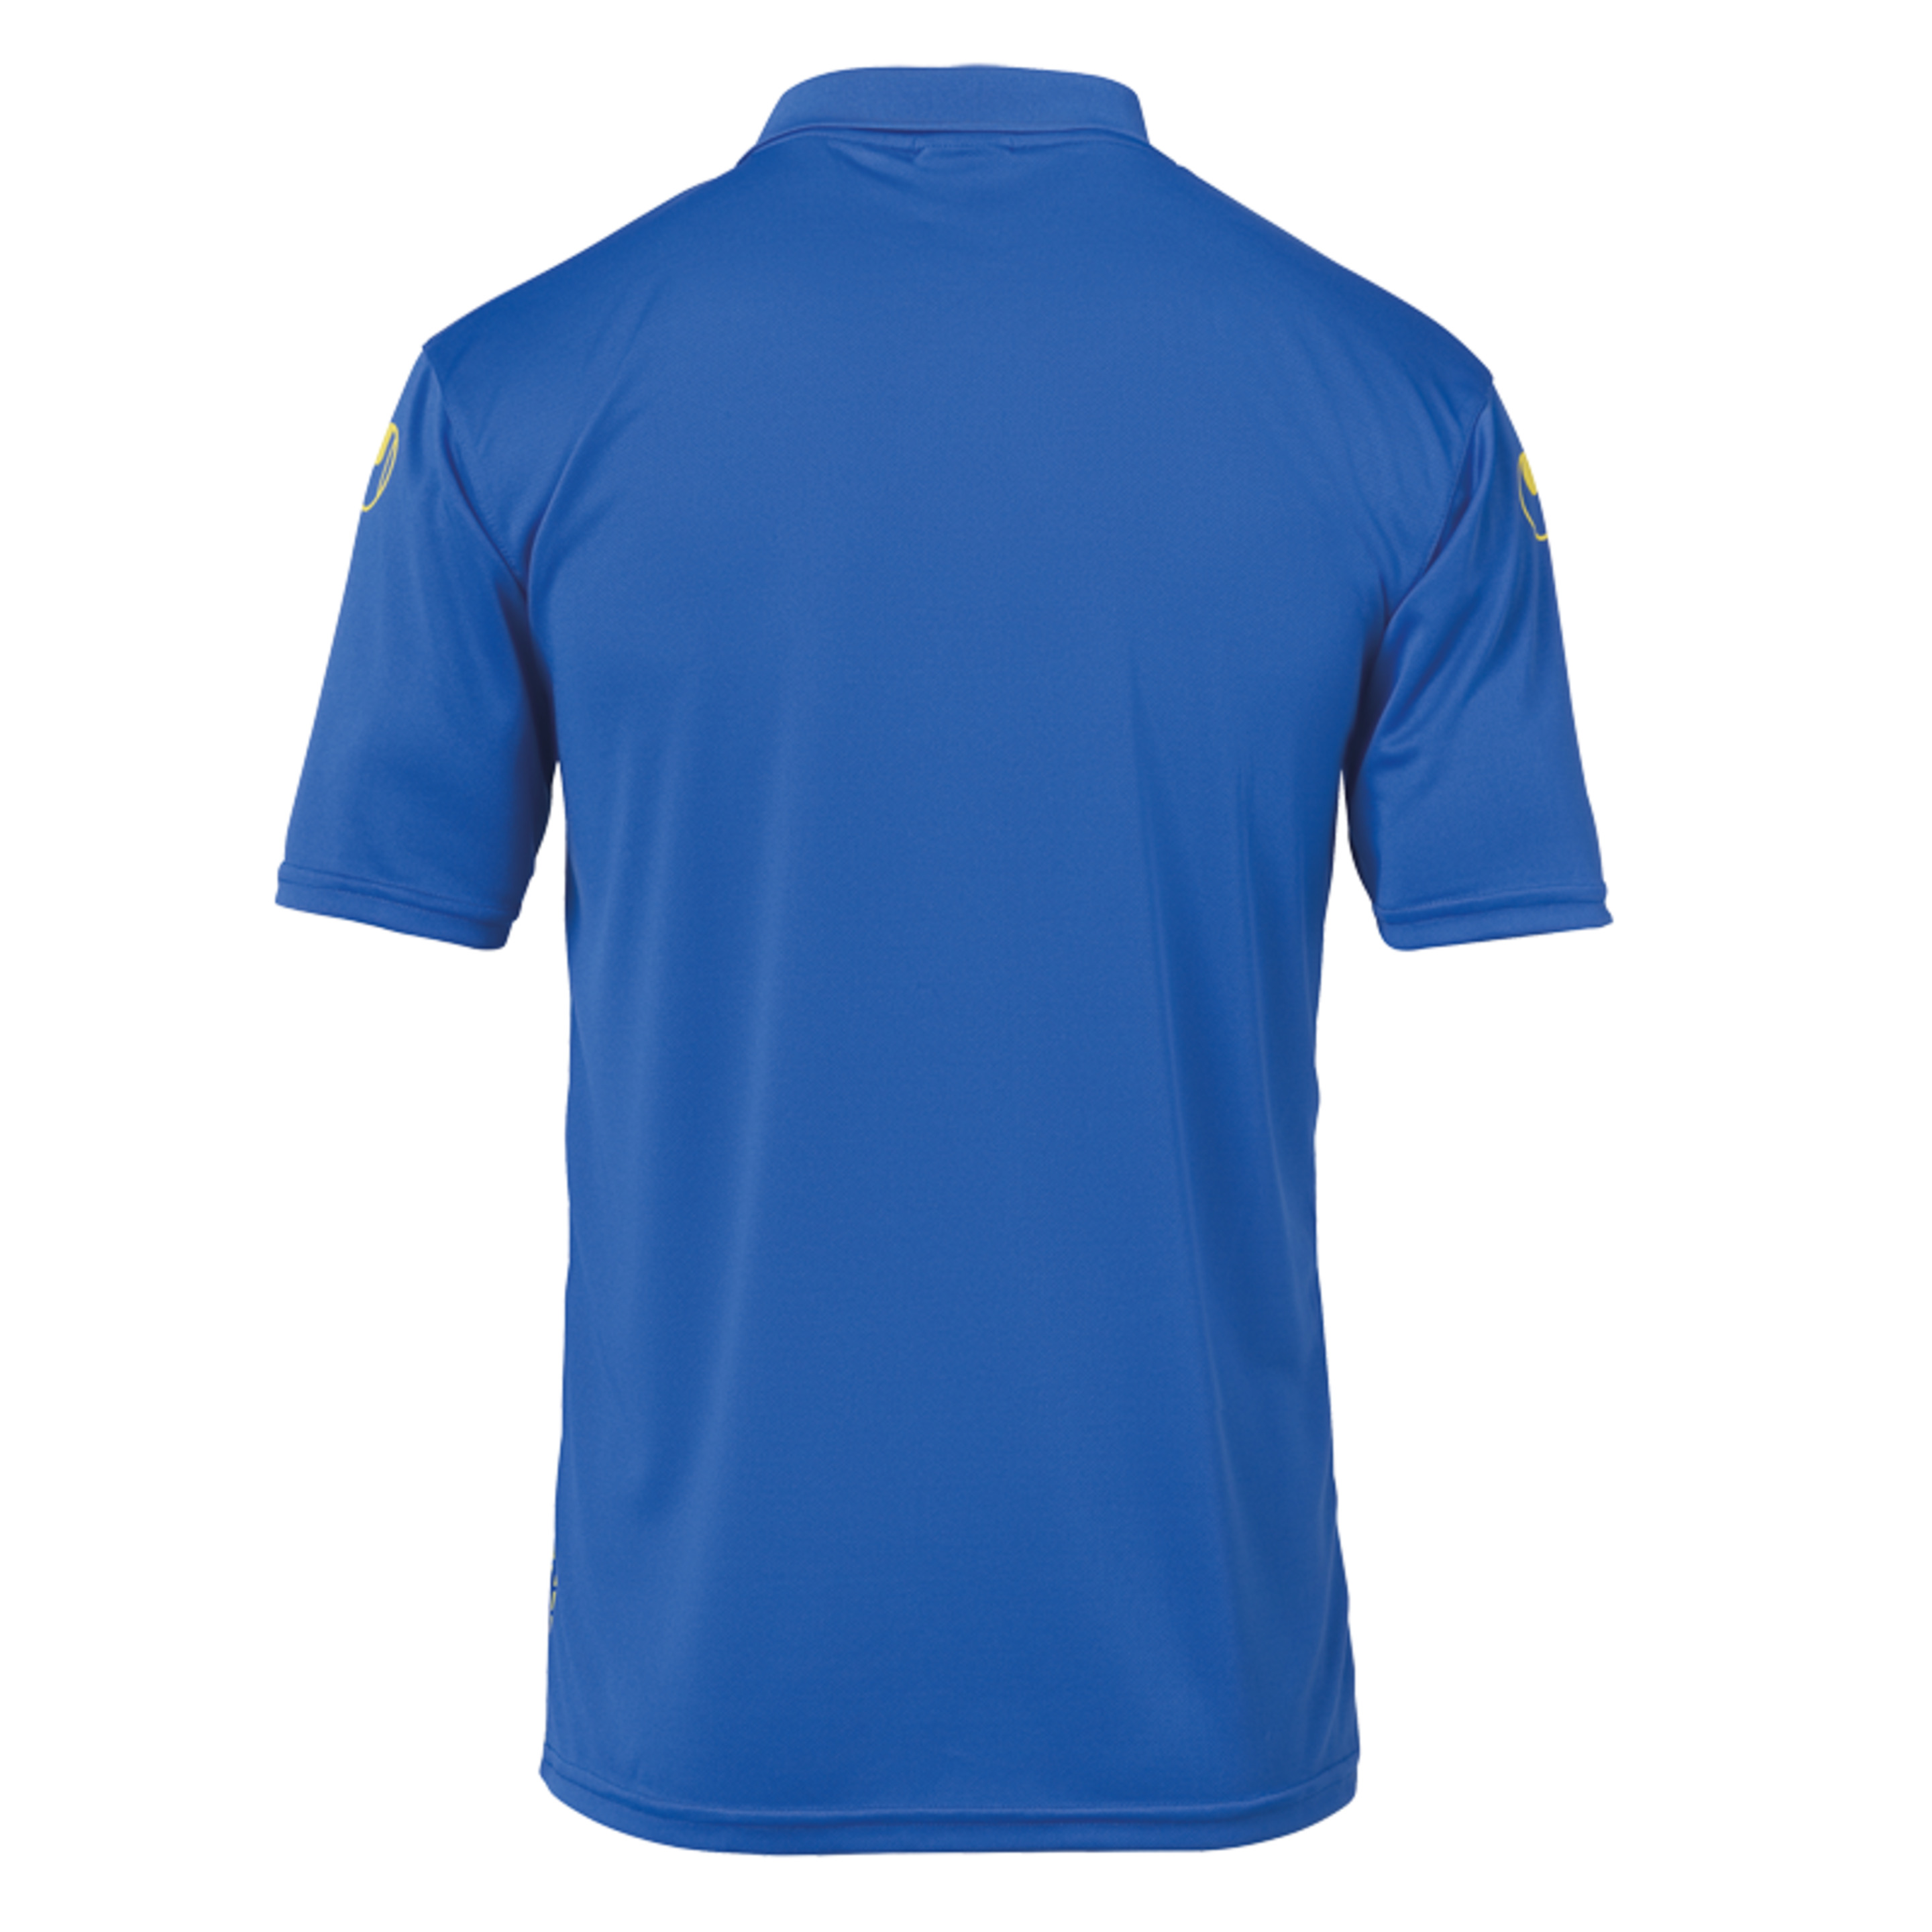 Score Polo Shirt Azur/lima Amarillo Uhlsport